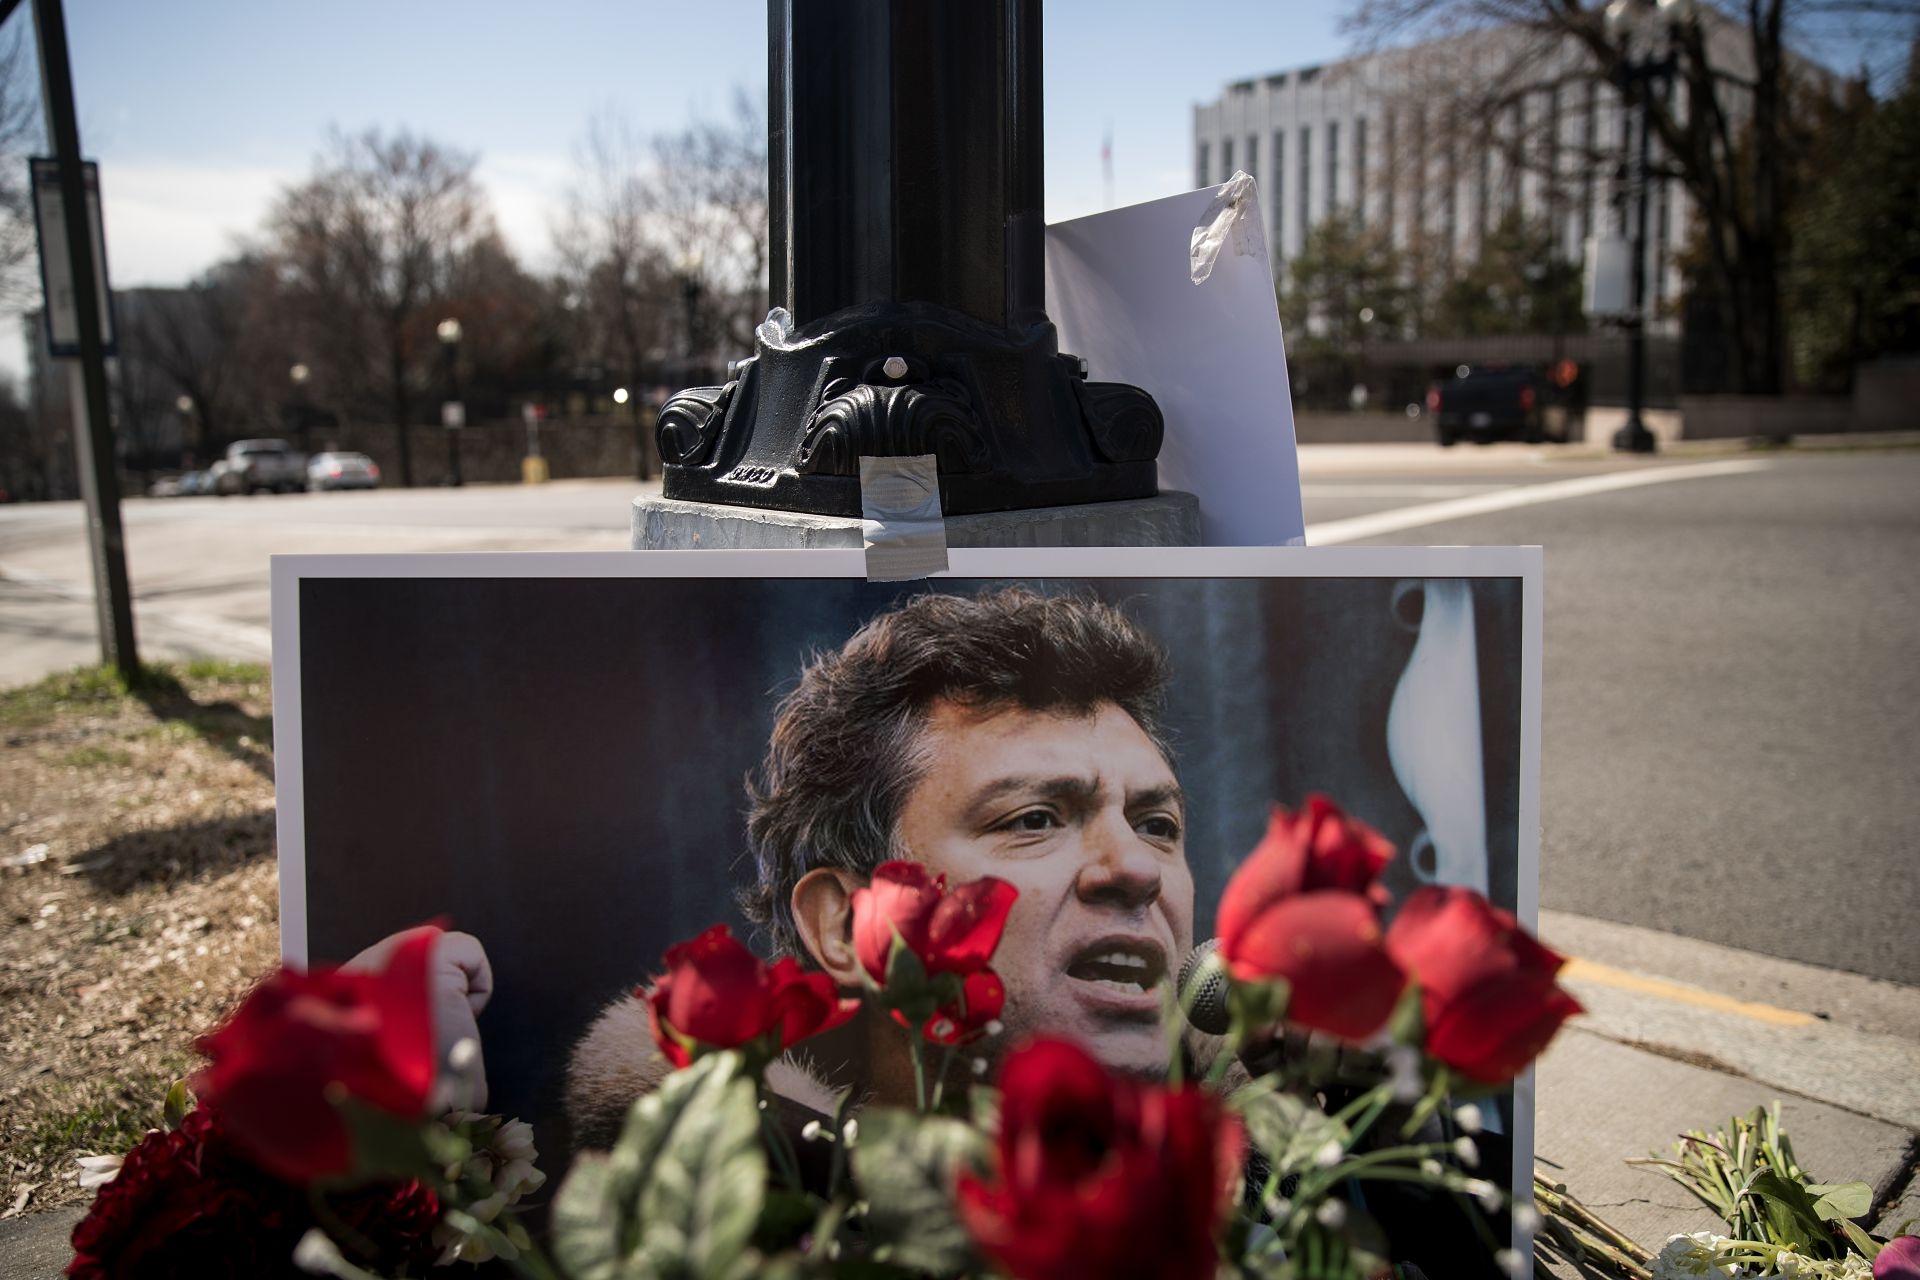 Площадът пред руското посолство във Вашингтон, който бе преименуван на името на Борис Немцов Площадът пред руското посолство във Вашингтон, който бе преименуван на името на Борис Немцов